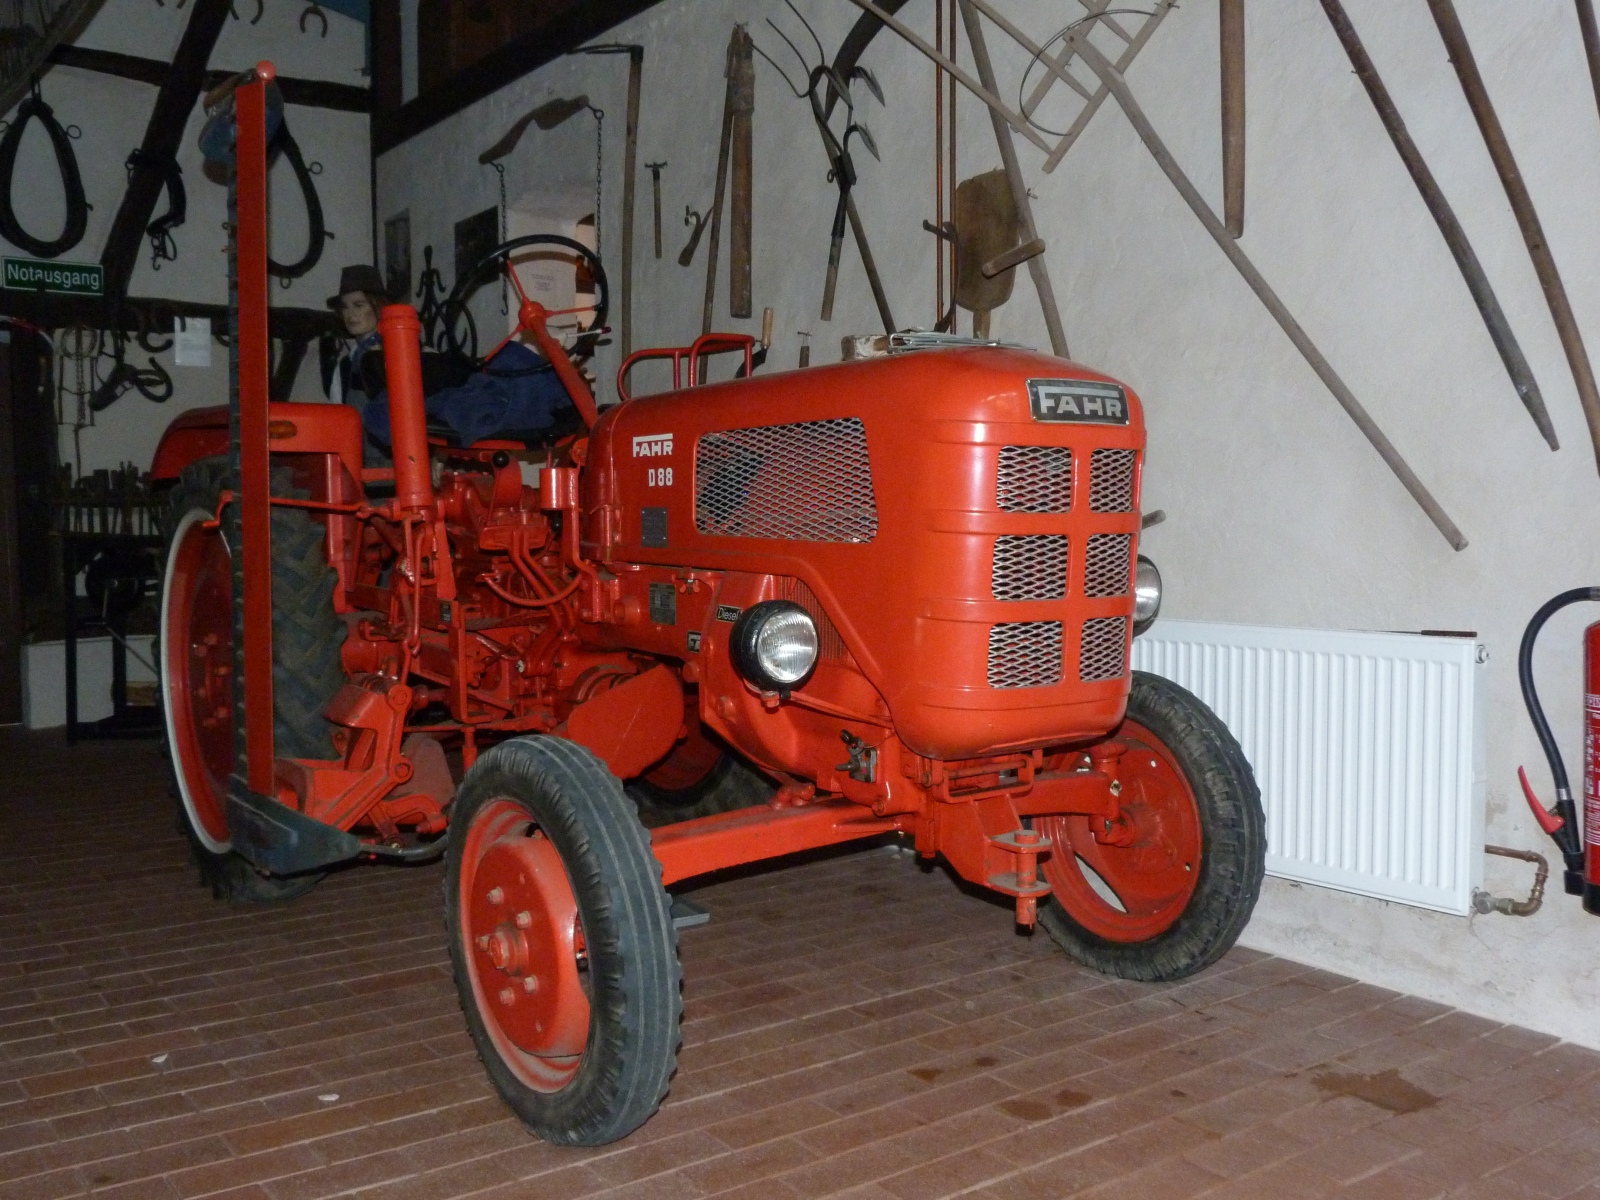 Traktor Fahr D88